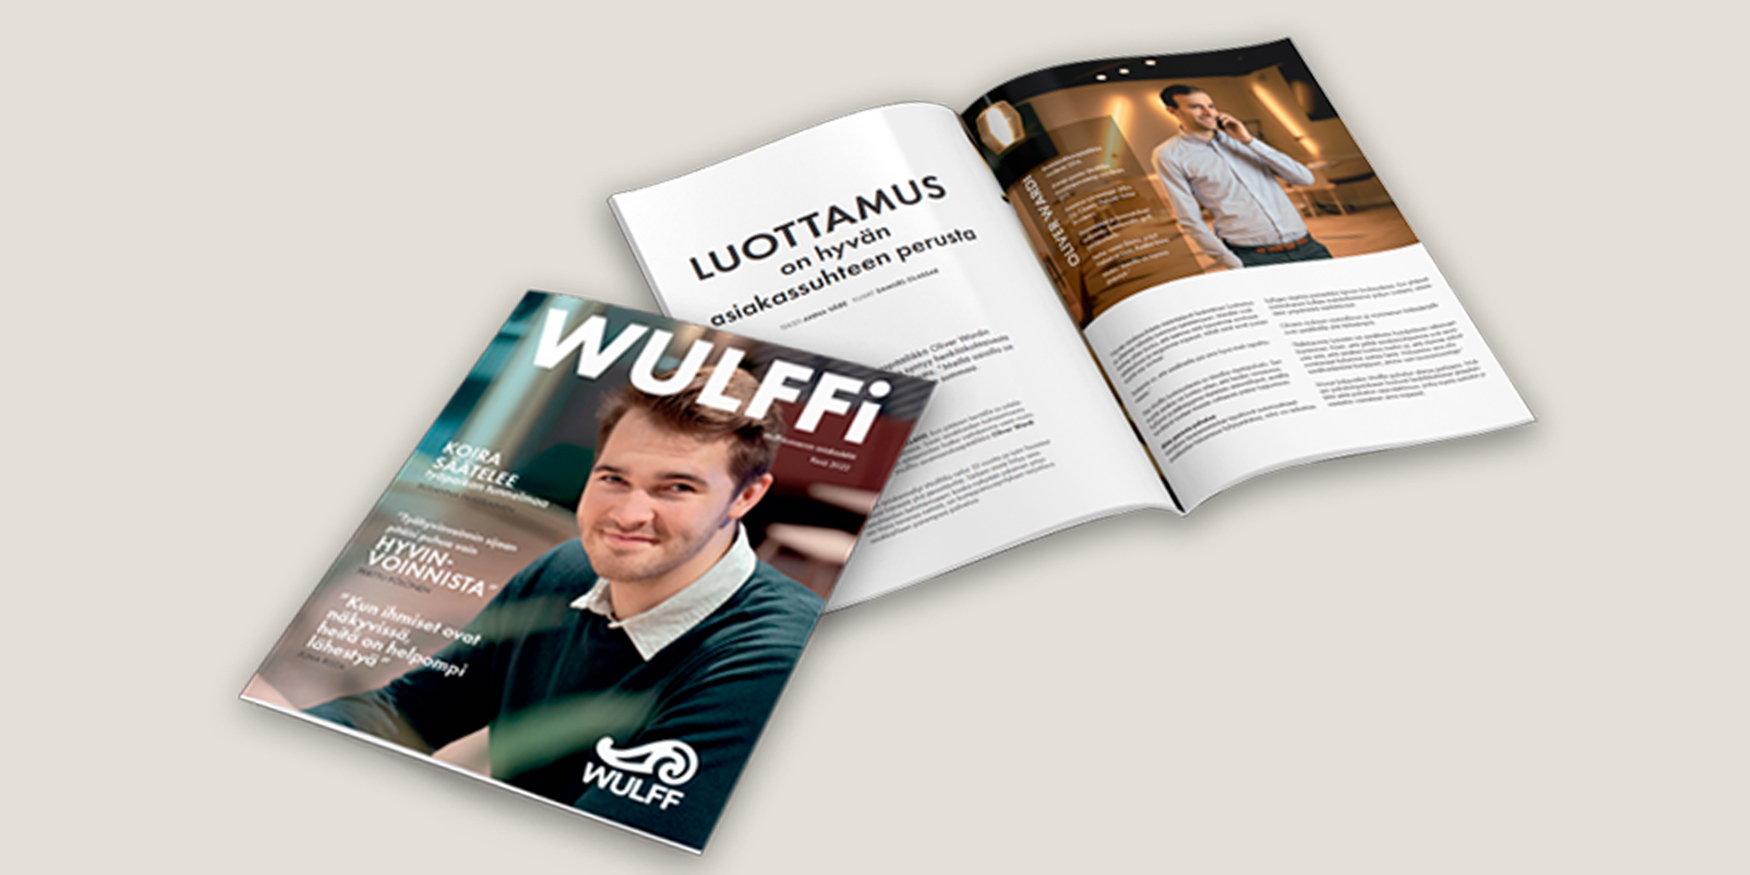 Wulffi-lehti 1/2022: lue uutisia asiakkaistamme, yhteistyökumppaneistamme ja Wulffista